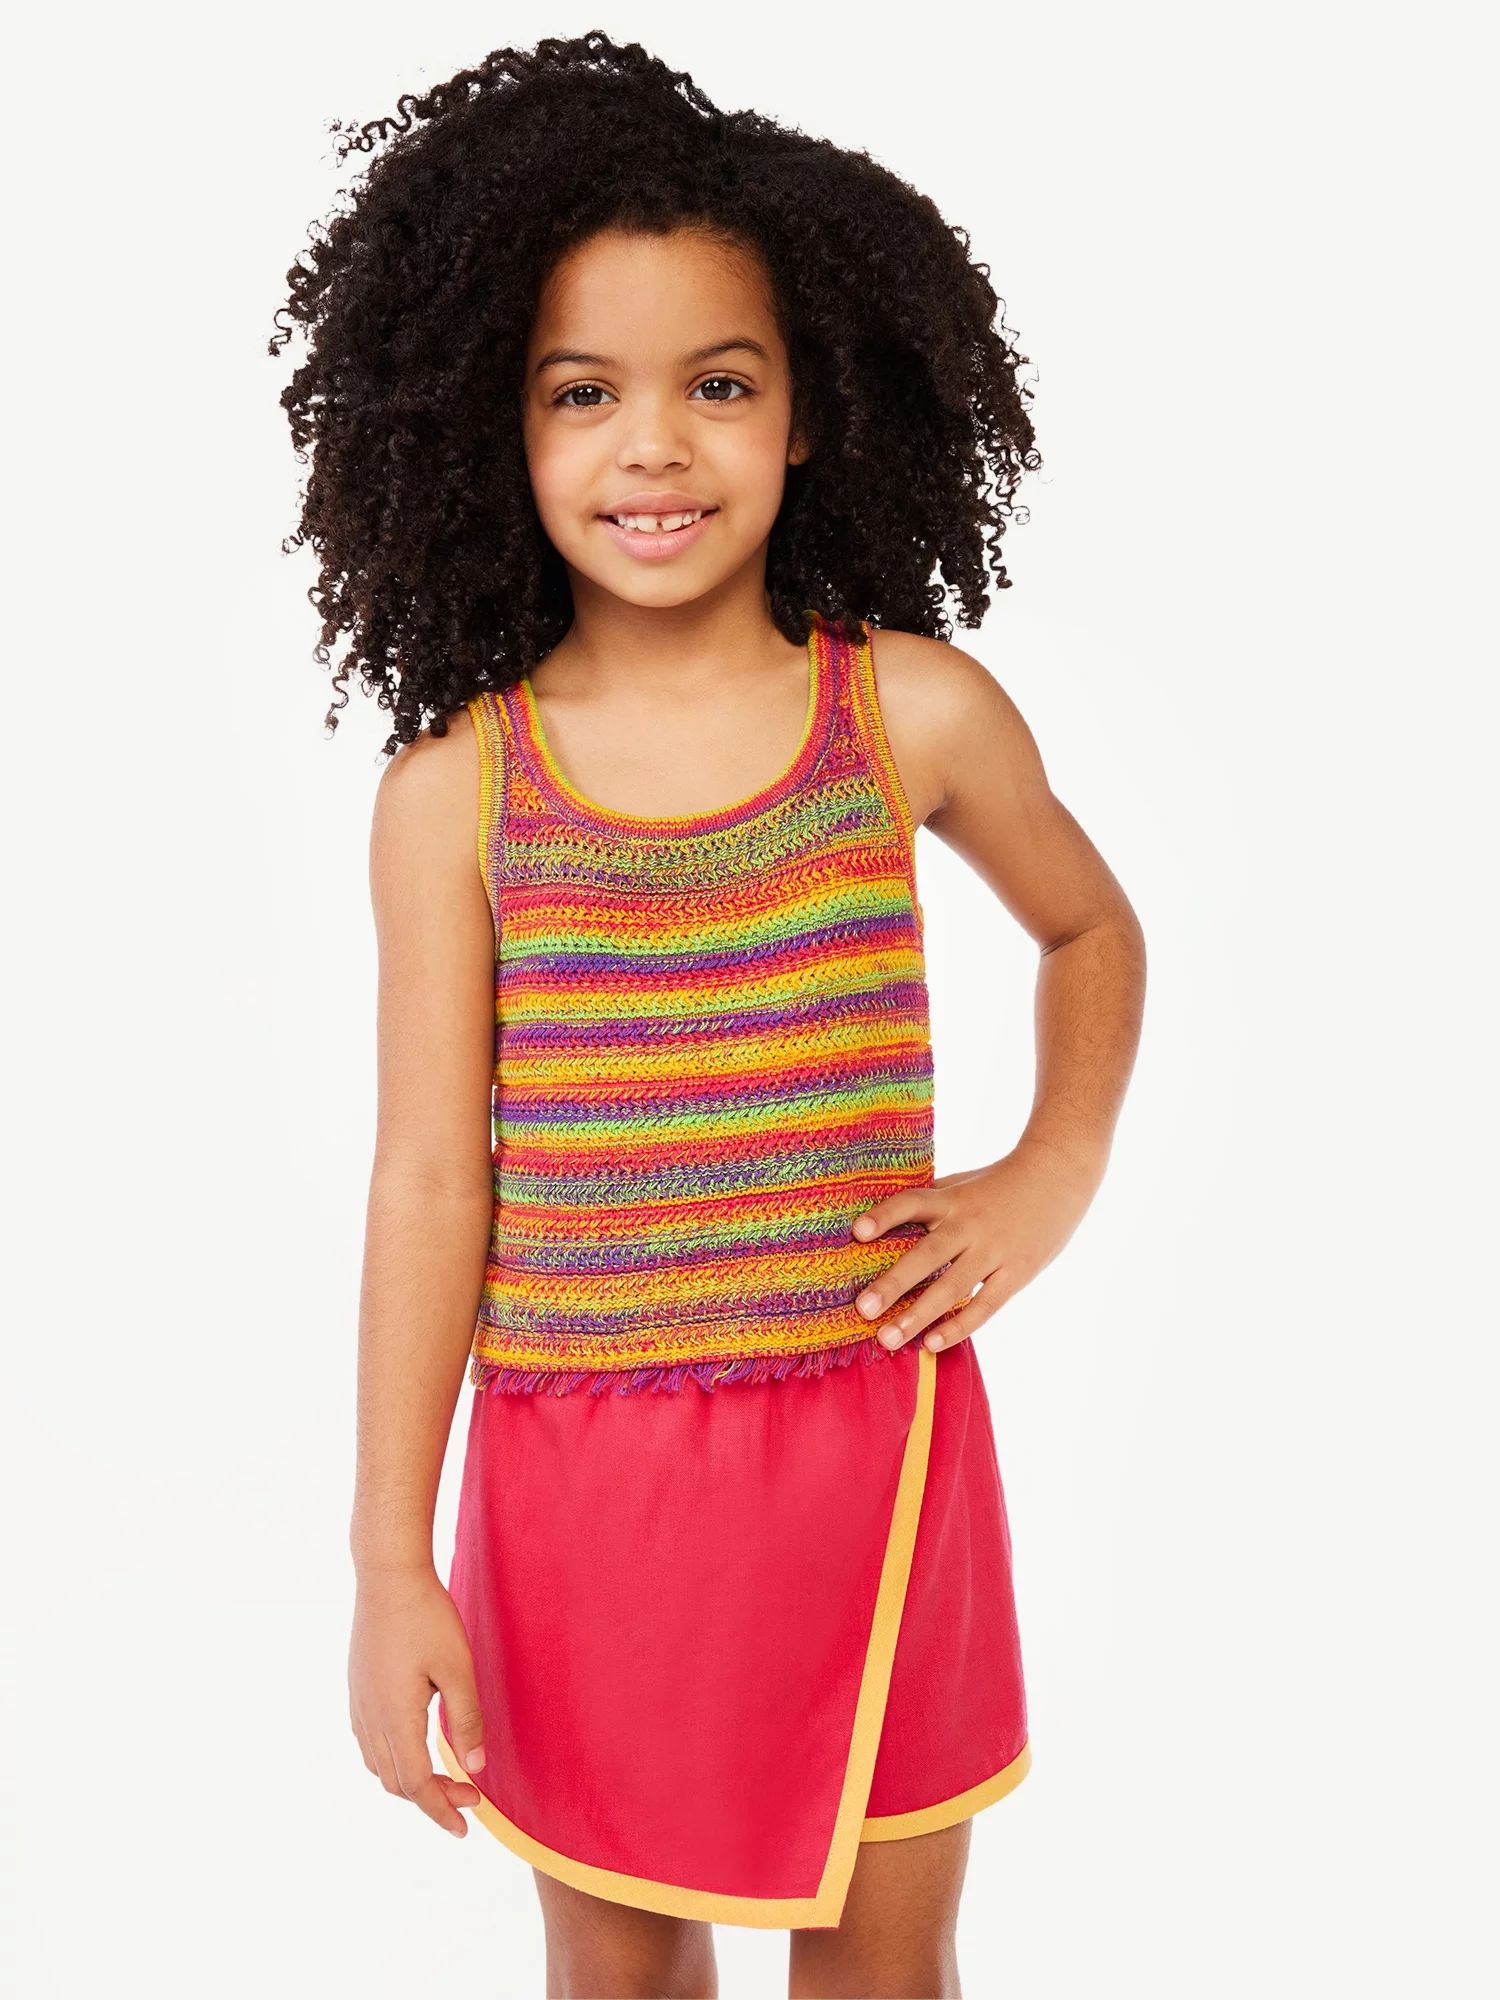 Scoop Girls Crochet Tank Top, Sizes 4-16 | Walmart (US)